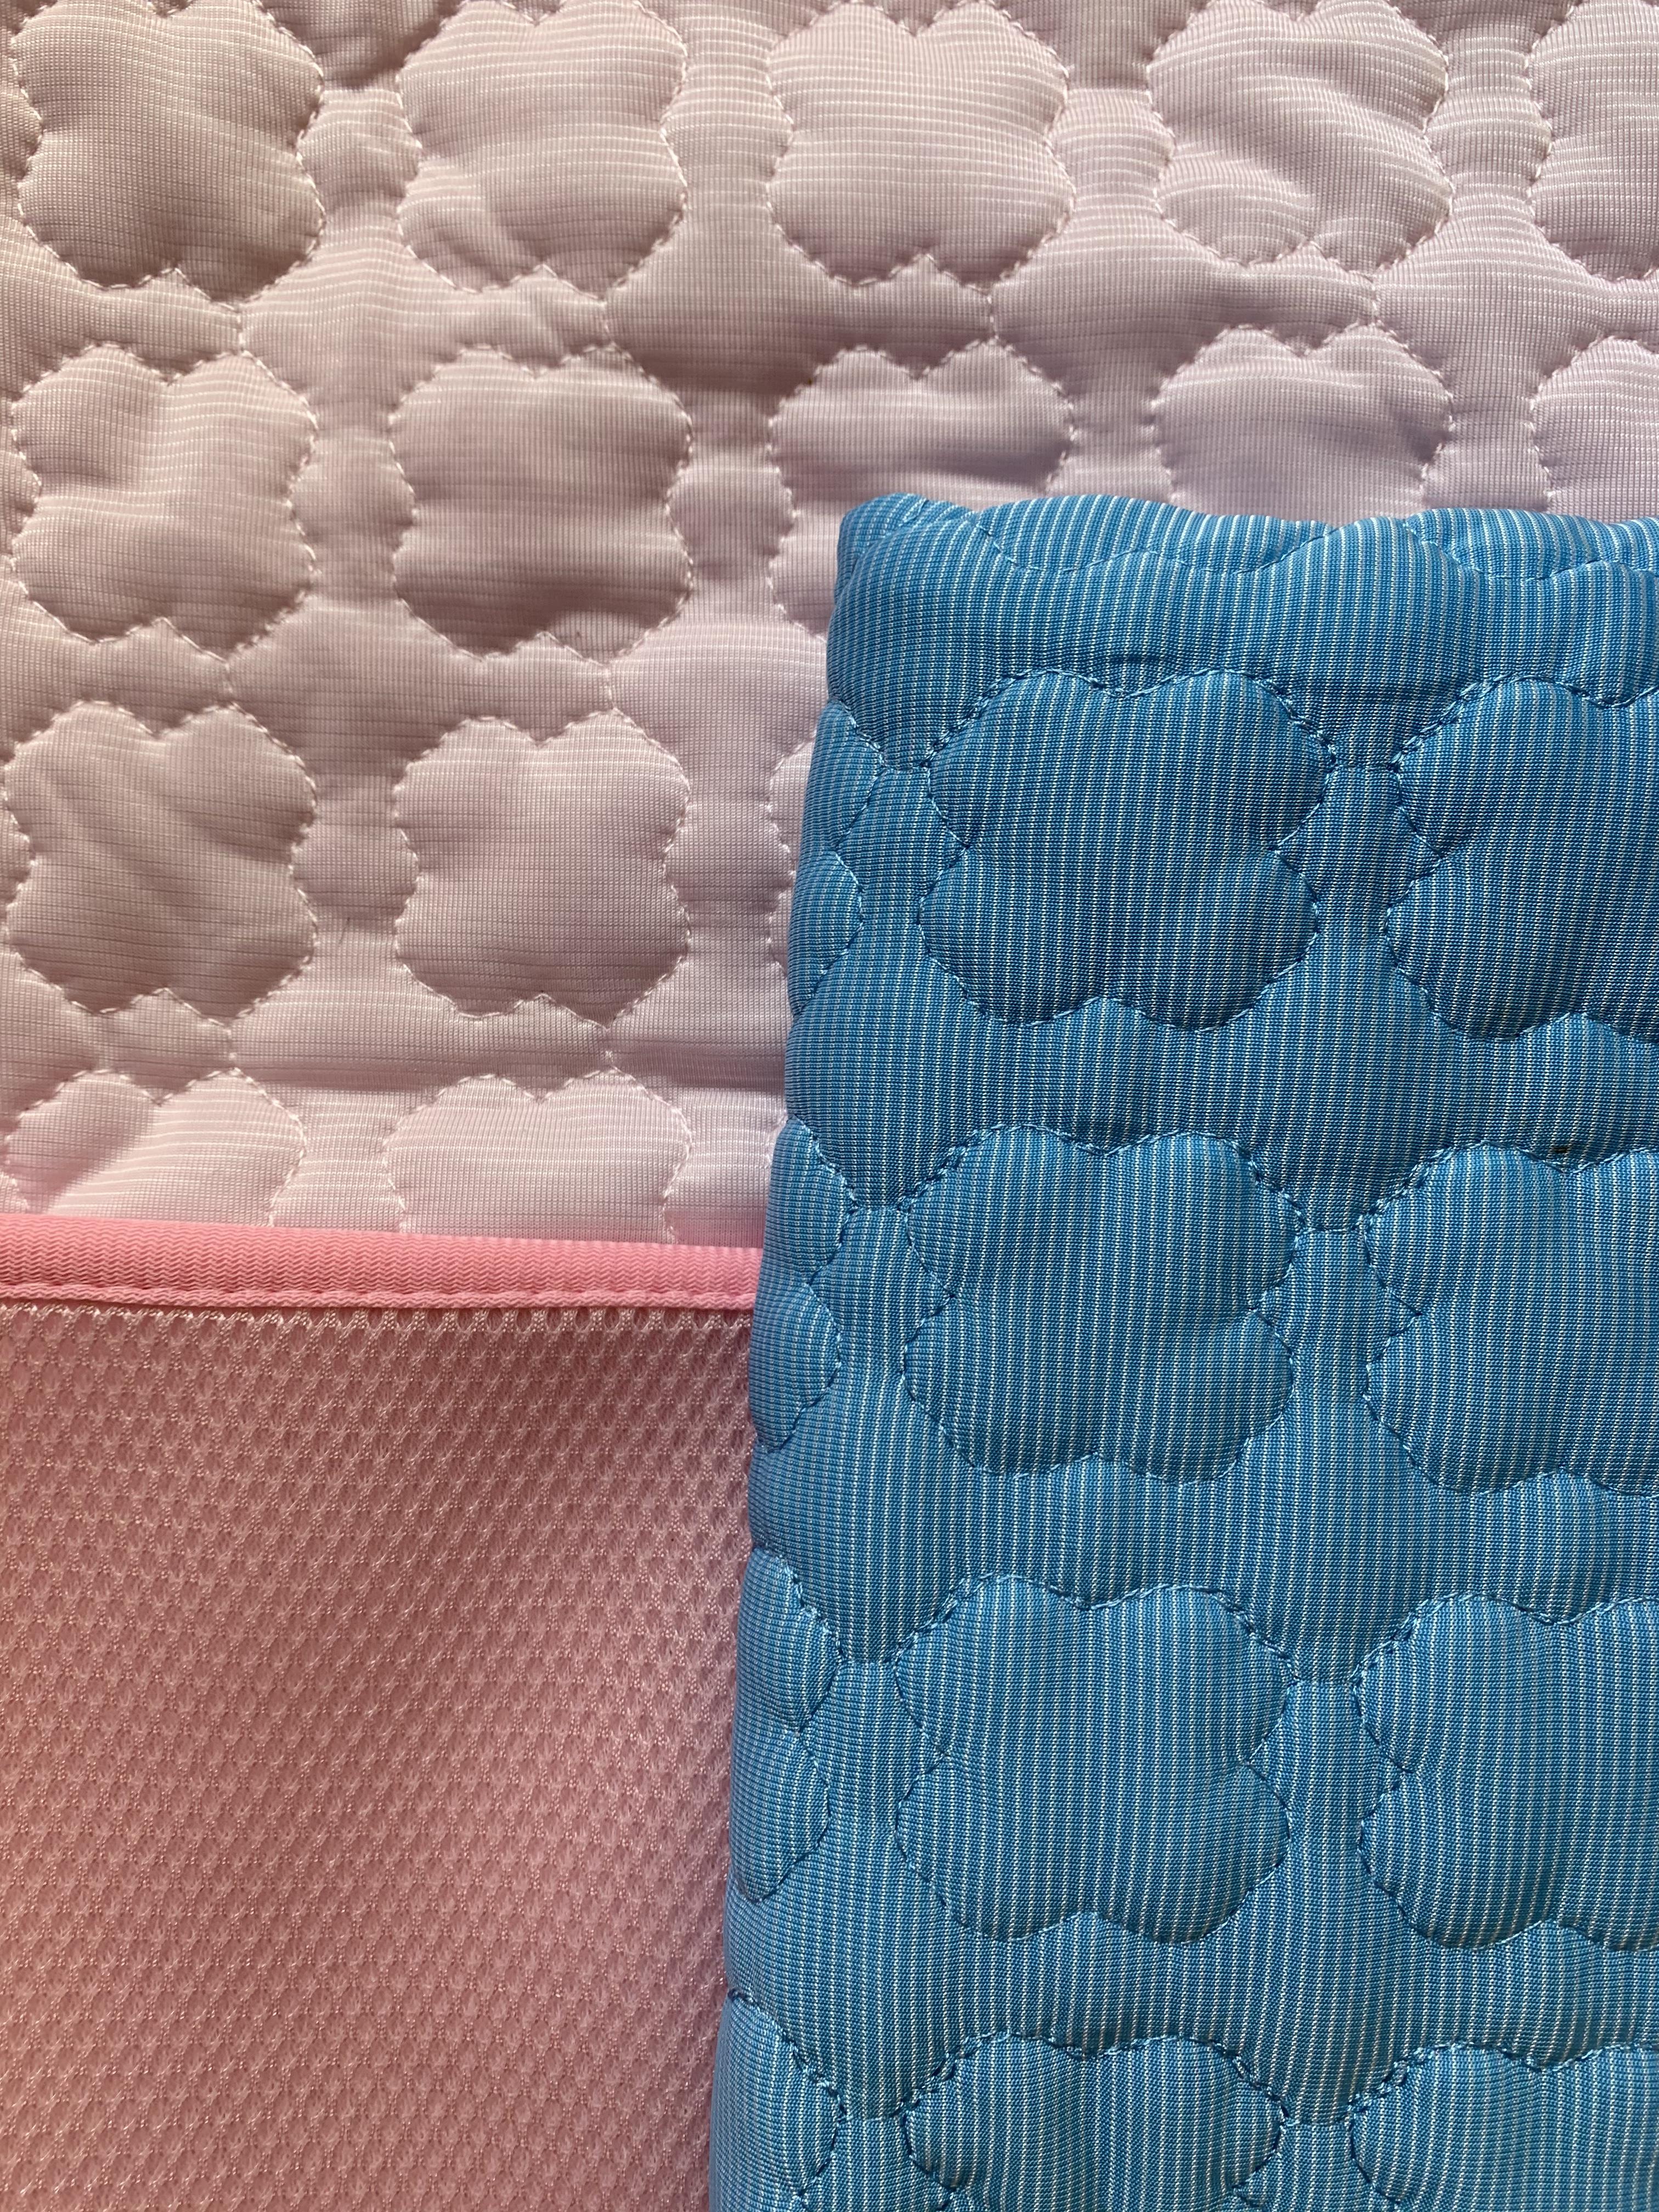 Close up of cooling mats